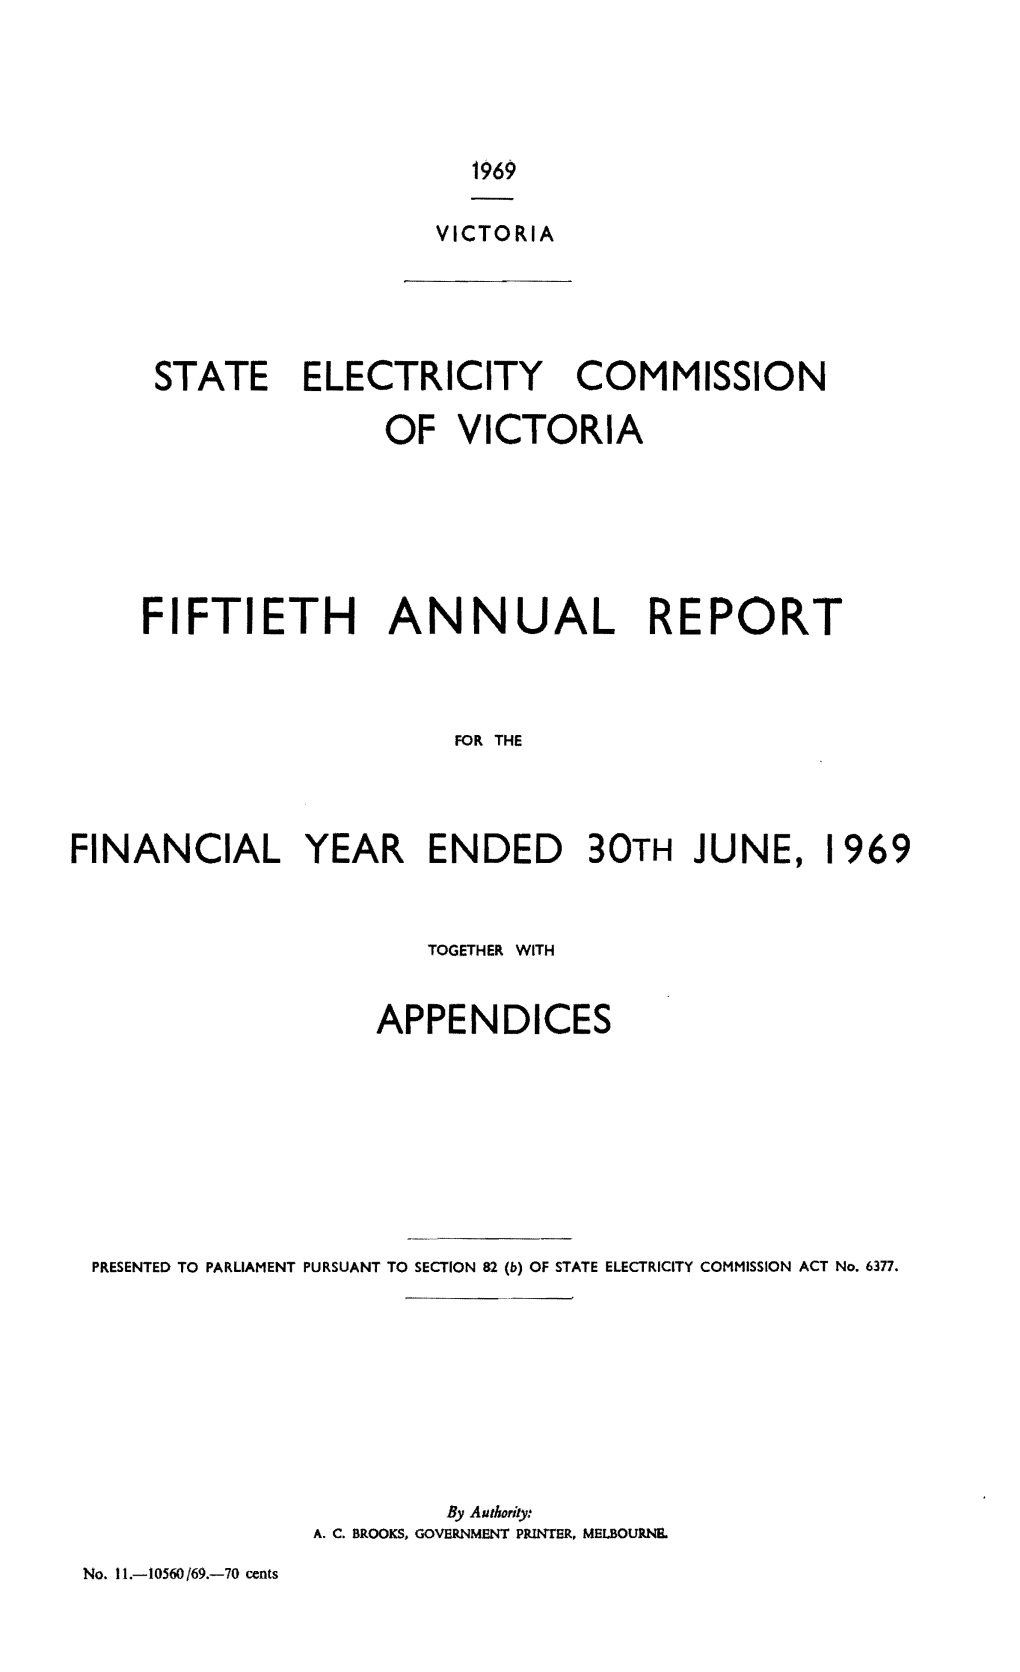 Fiftieth Annual Report